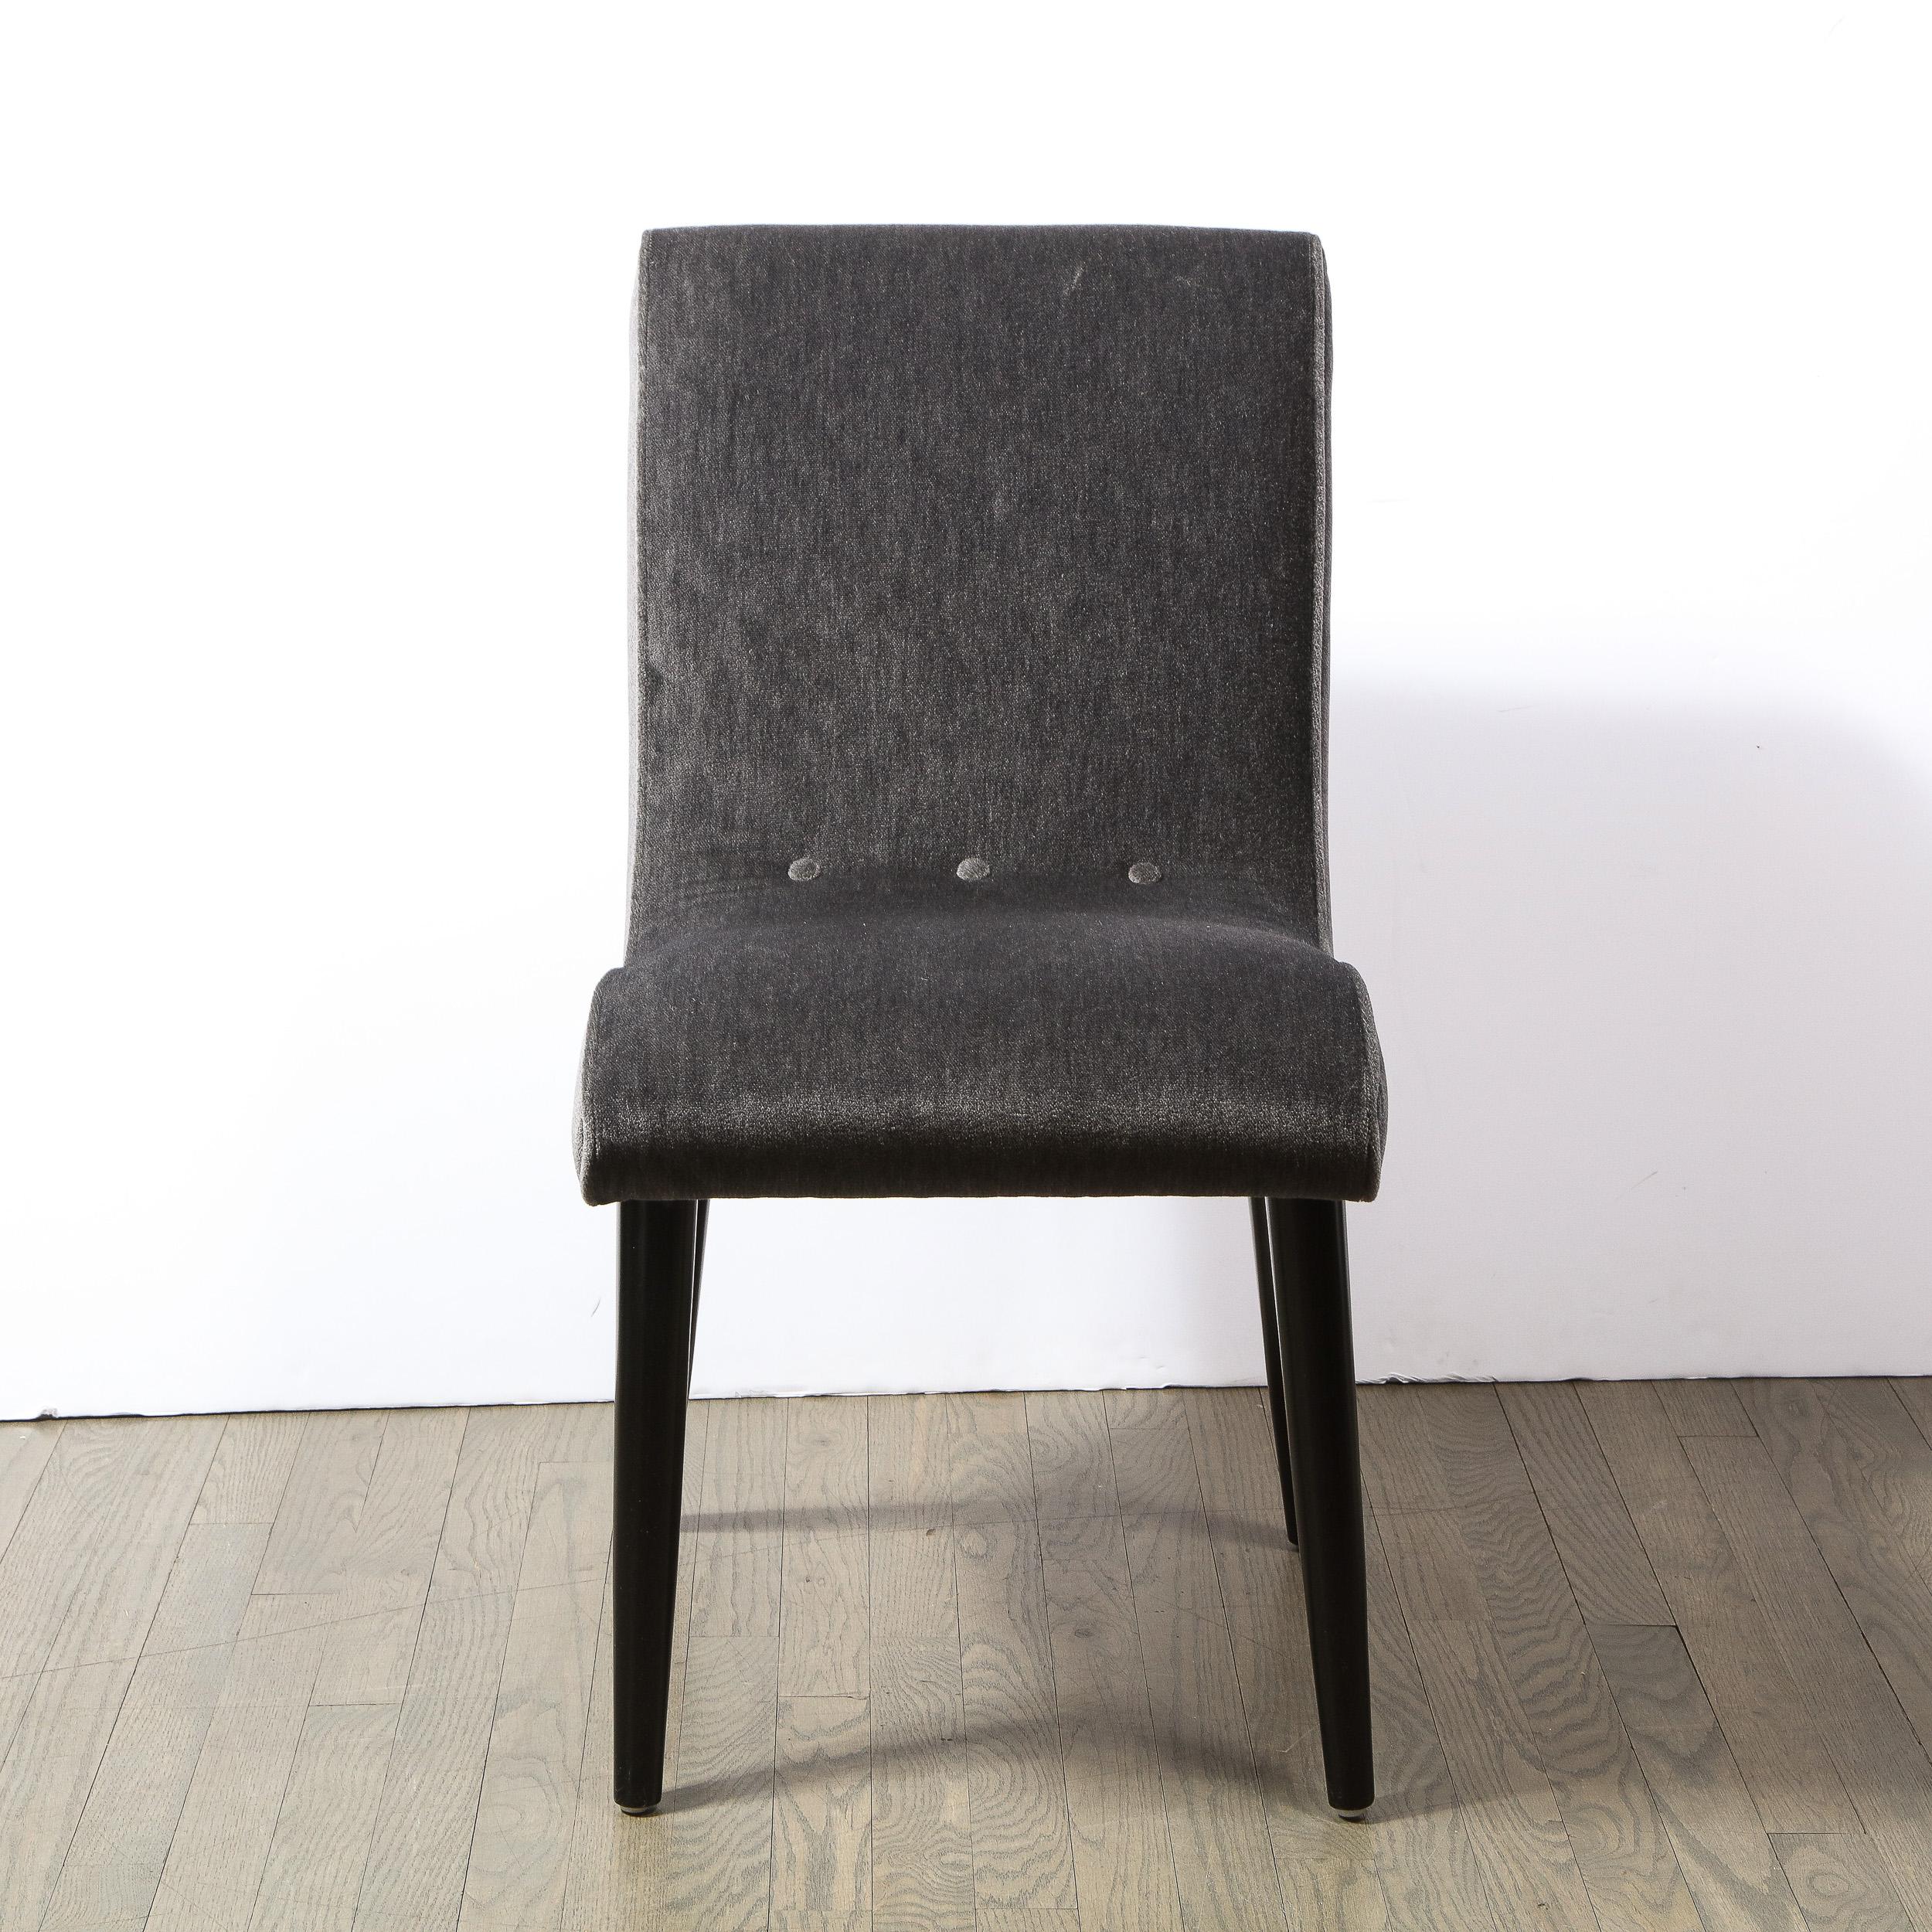 Cette étonnante chaise d'appoint a été réalisée par l'estimé designer américain Russel Wright aux États-Unis, vers 1940. Il est doté de quatre pieds coniques évasés en noyer ébonisé et d'un corps en forme de S stylisé et curviligne, avec des boutons